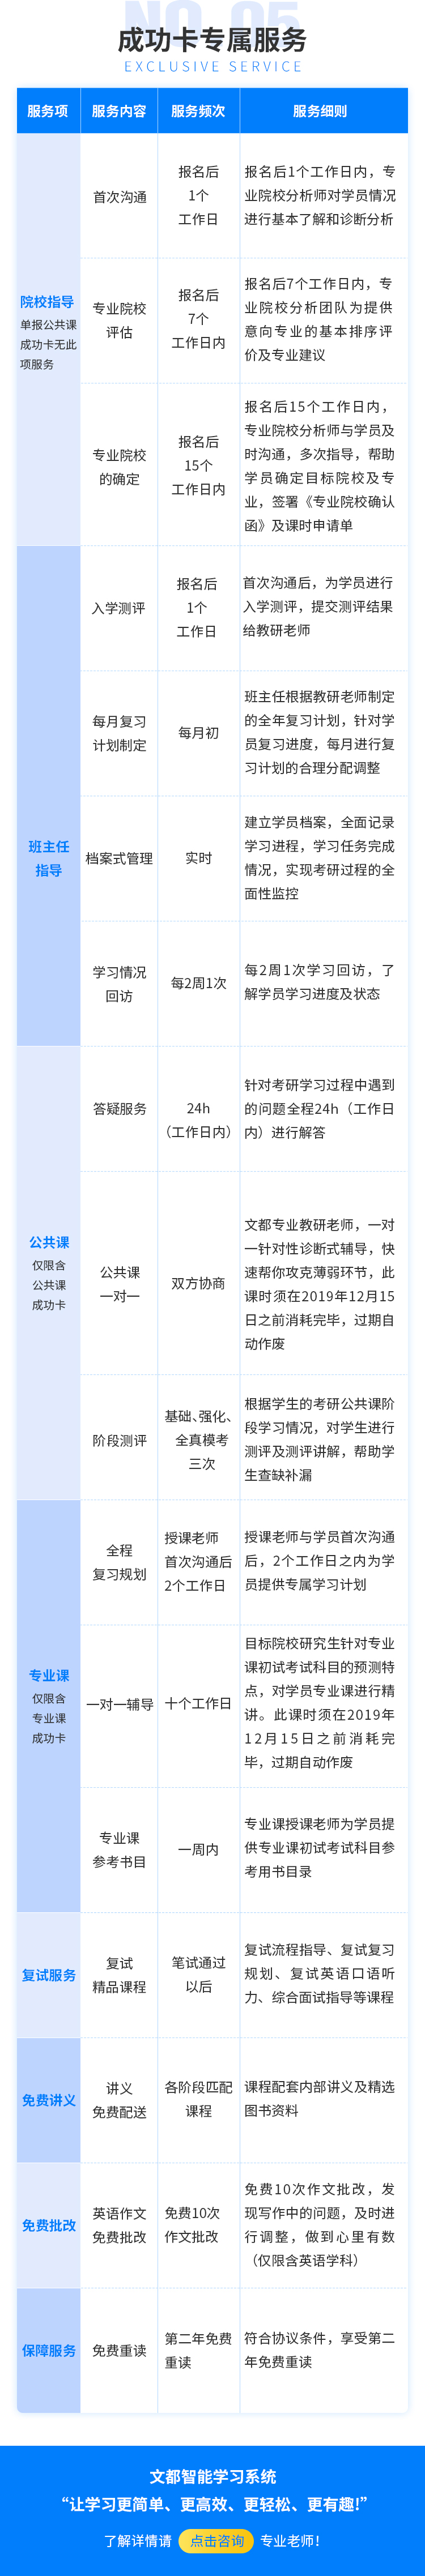 成功卡课程详情页-汉语国际教育硕士_04.jpg